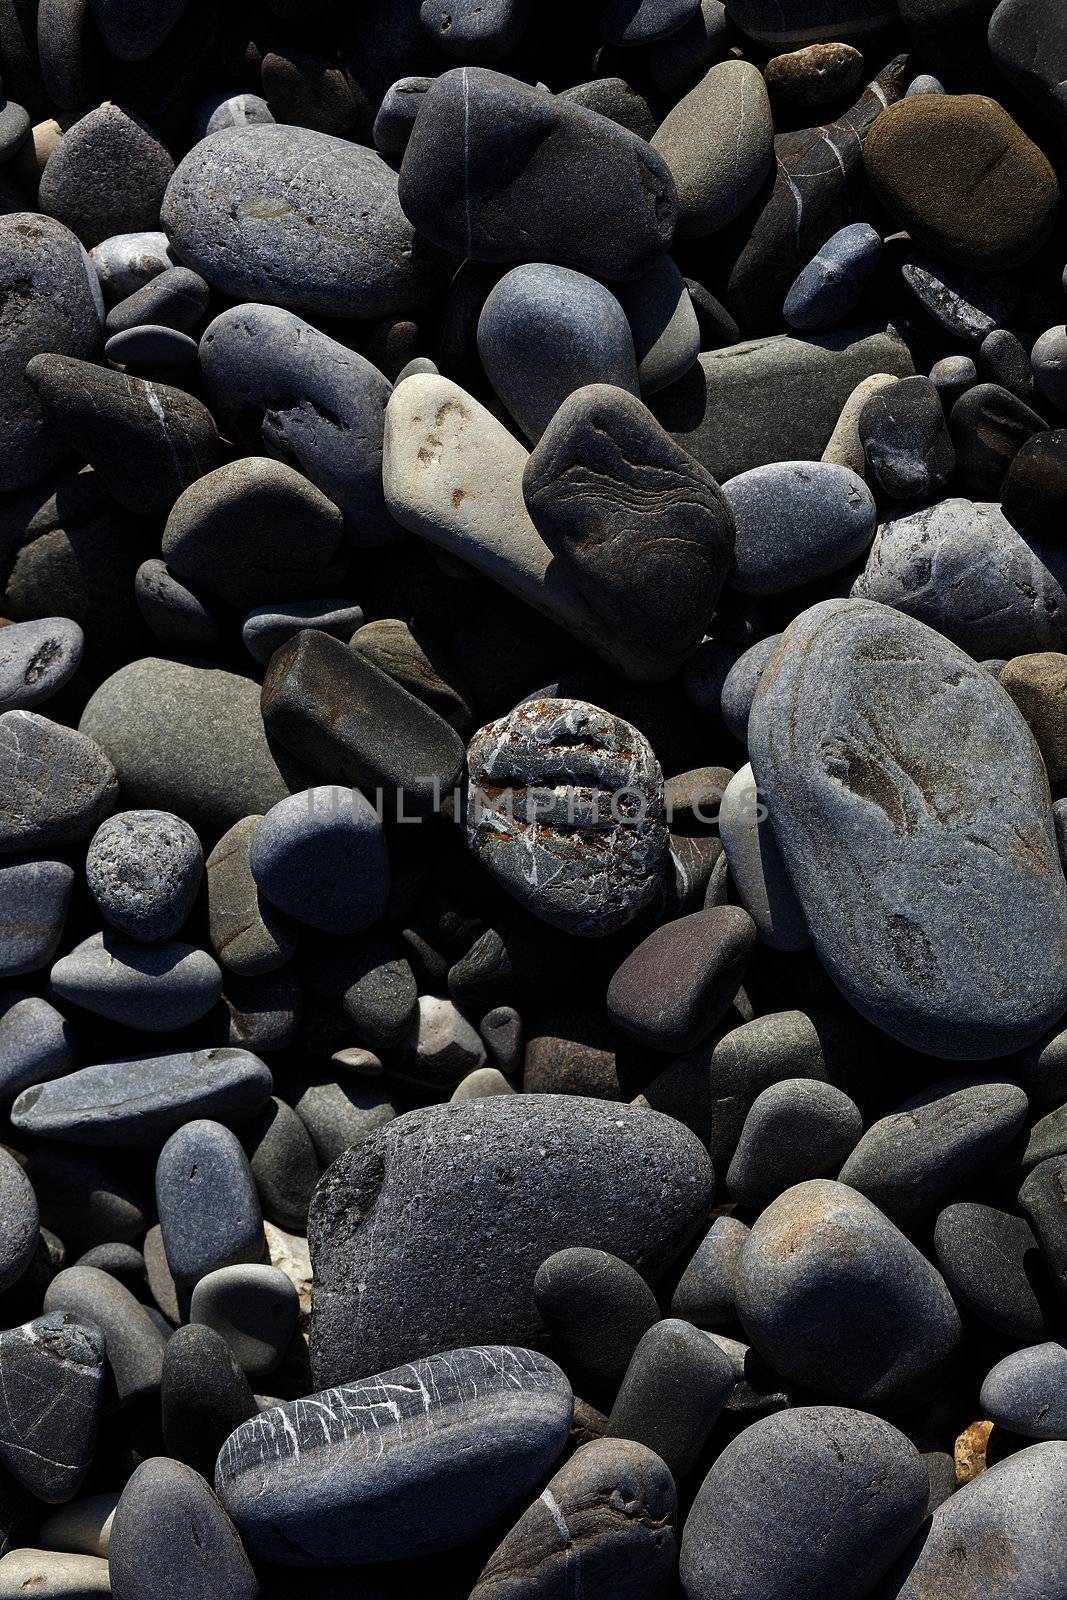 Texture of many gray sea beach pebbles